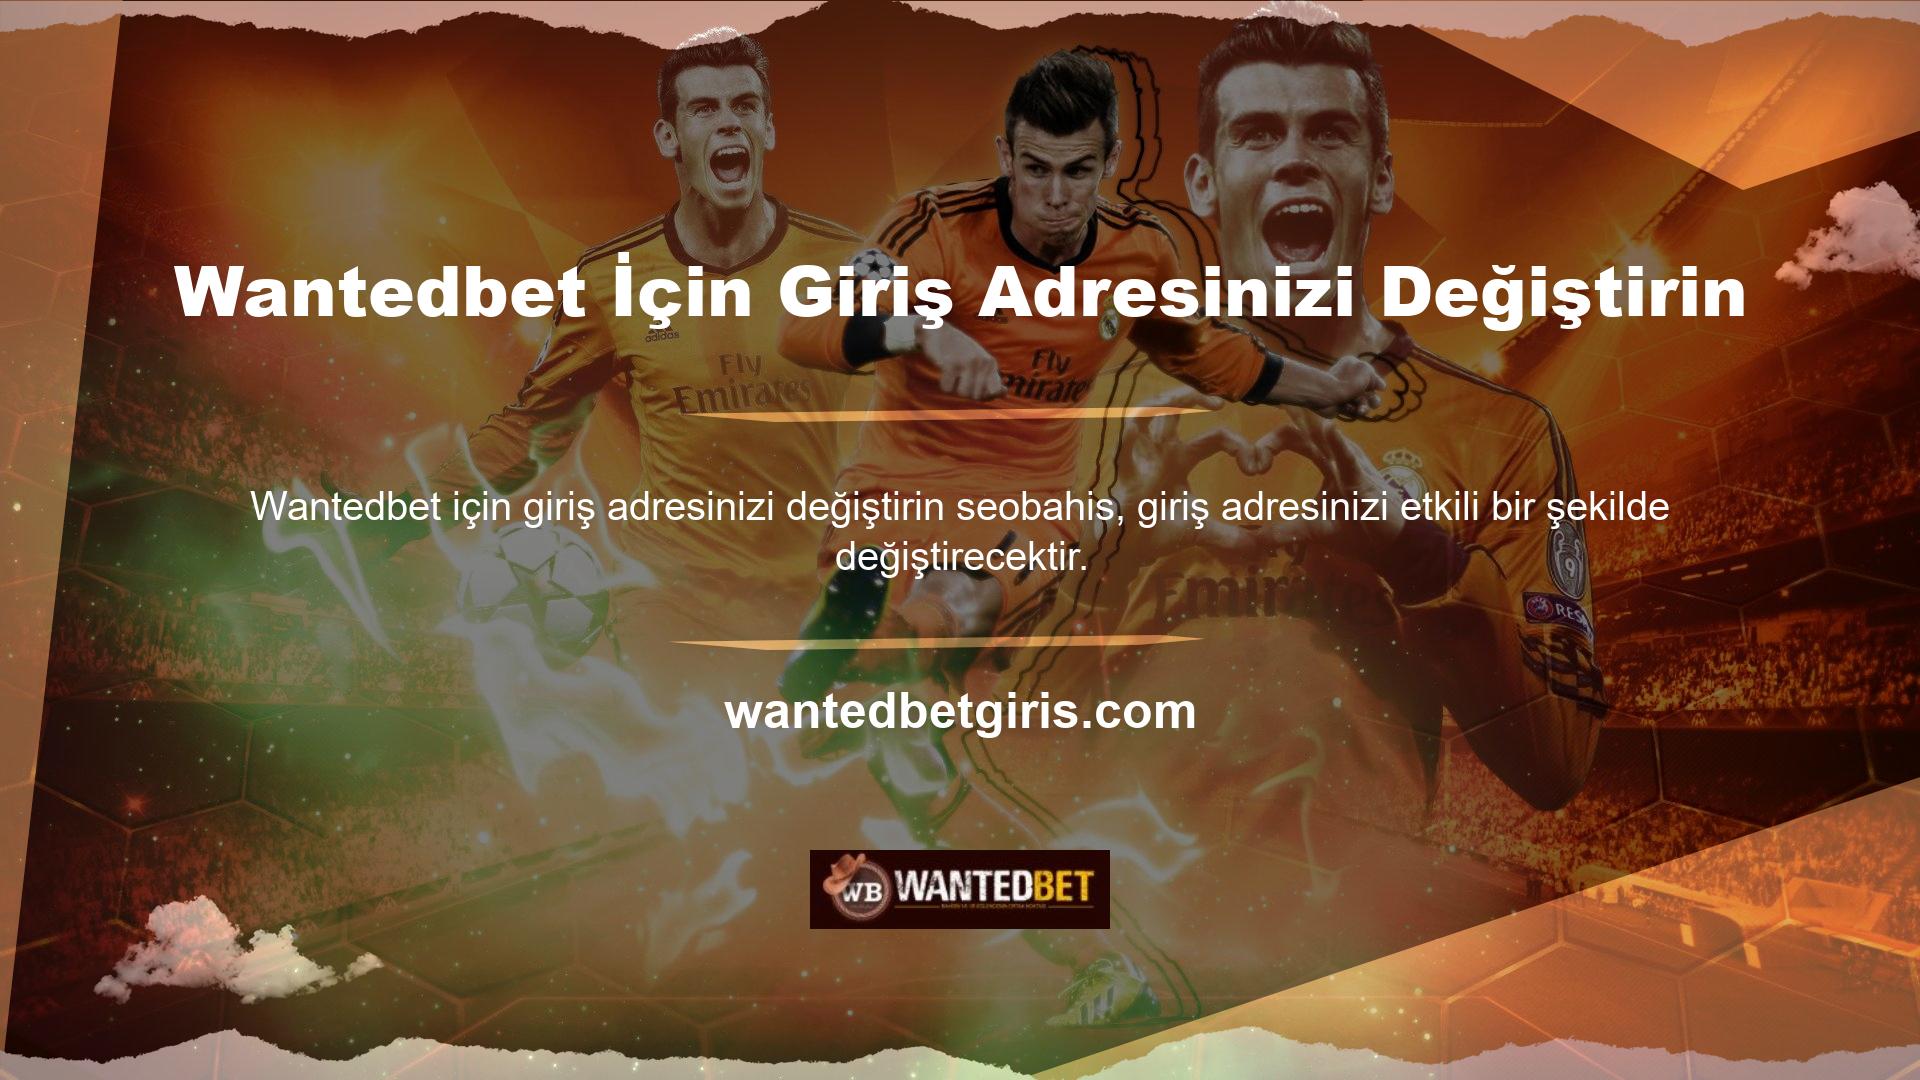 Wantedbet yeni üye kayıt adresindeki değişiklikler birkaç dakika içinde geçerli olacaktır